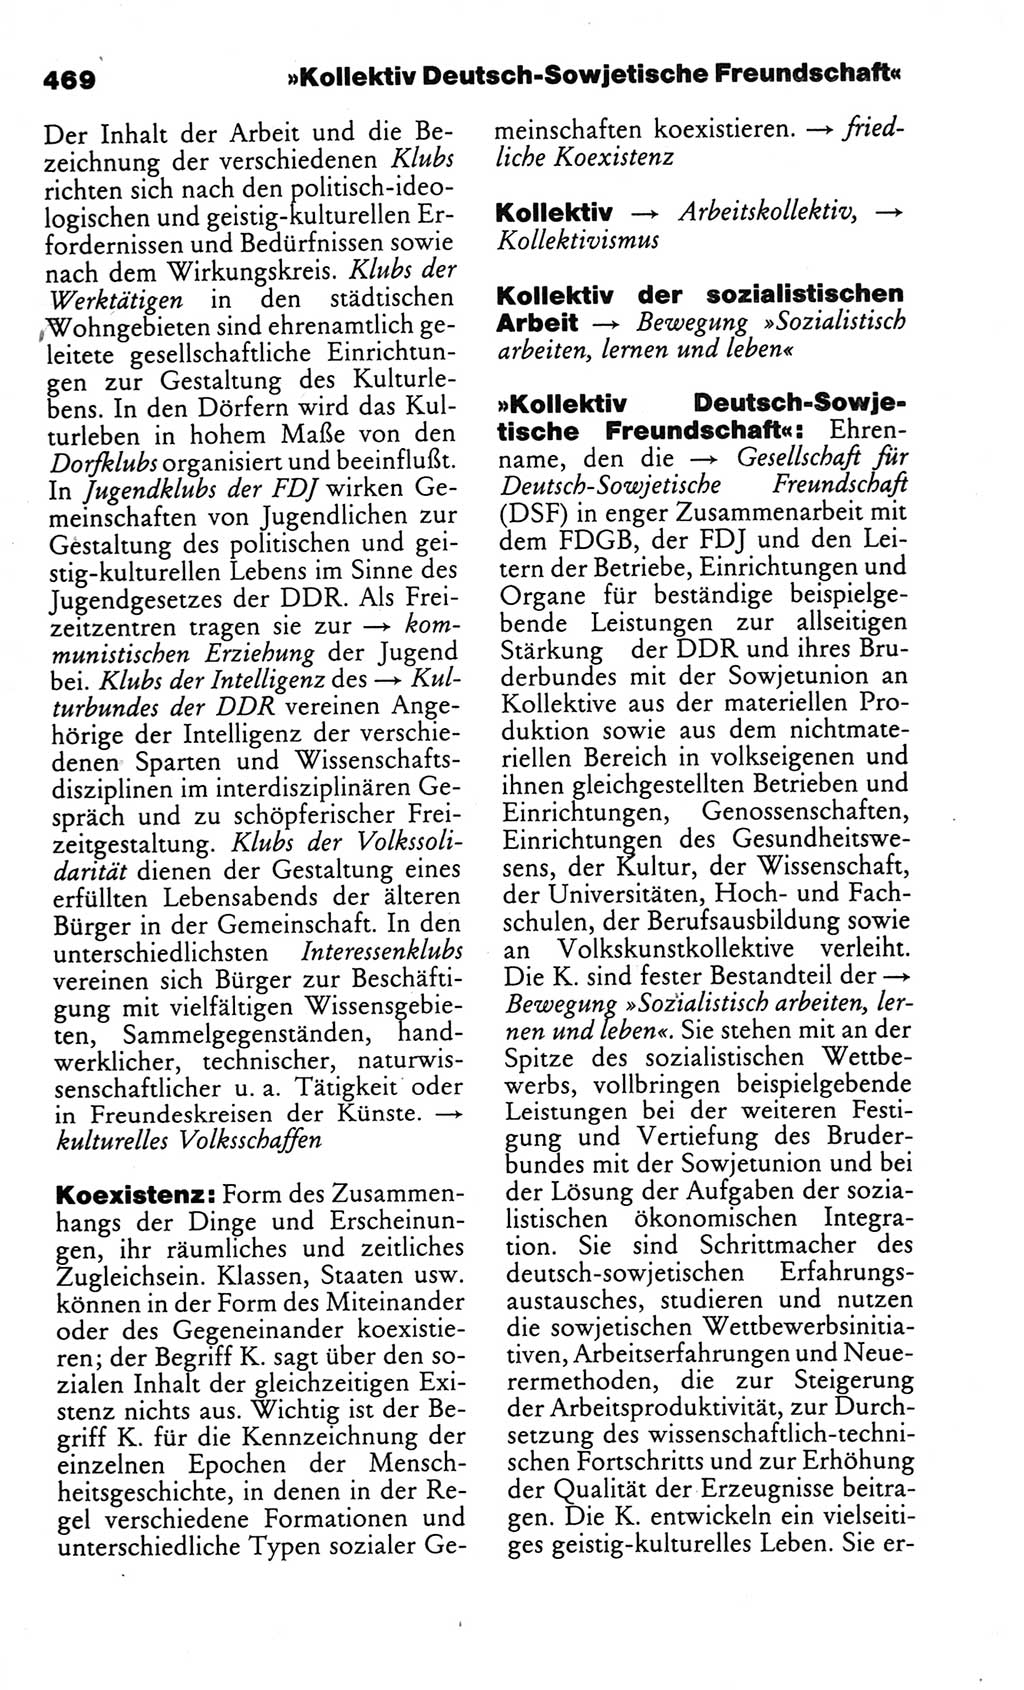 Kleines politisches Wörterbuch [Deutsche Demokratische Republik (DDR)] 1986, Seite 469 (Kl. pol. Wb. DDR 1986, S. 469)